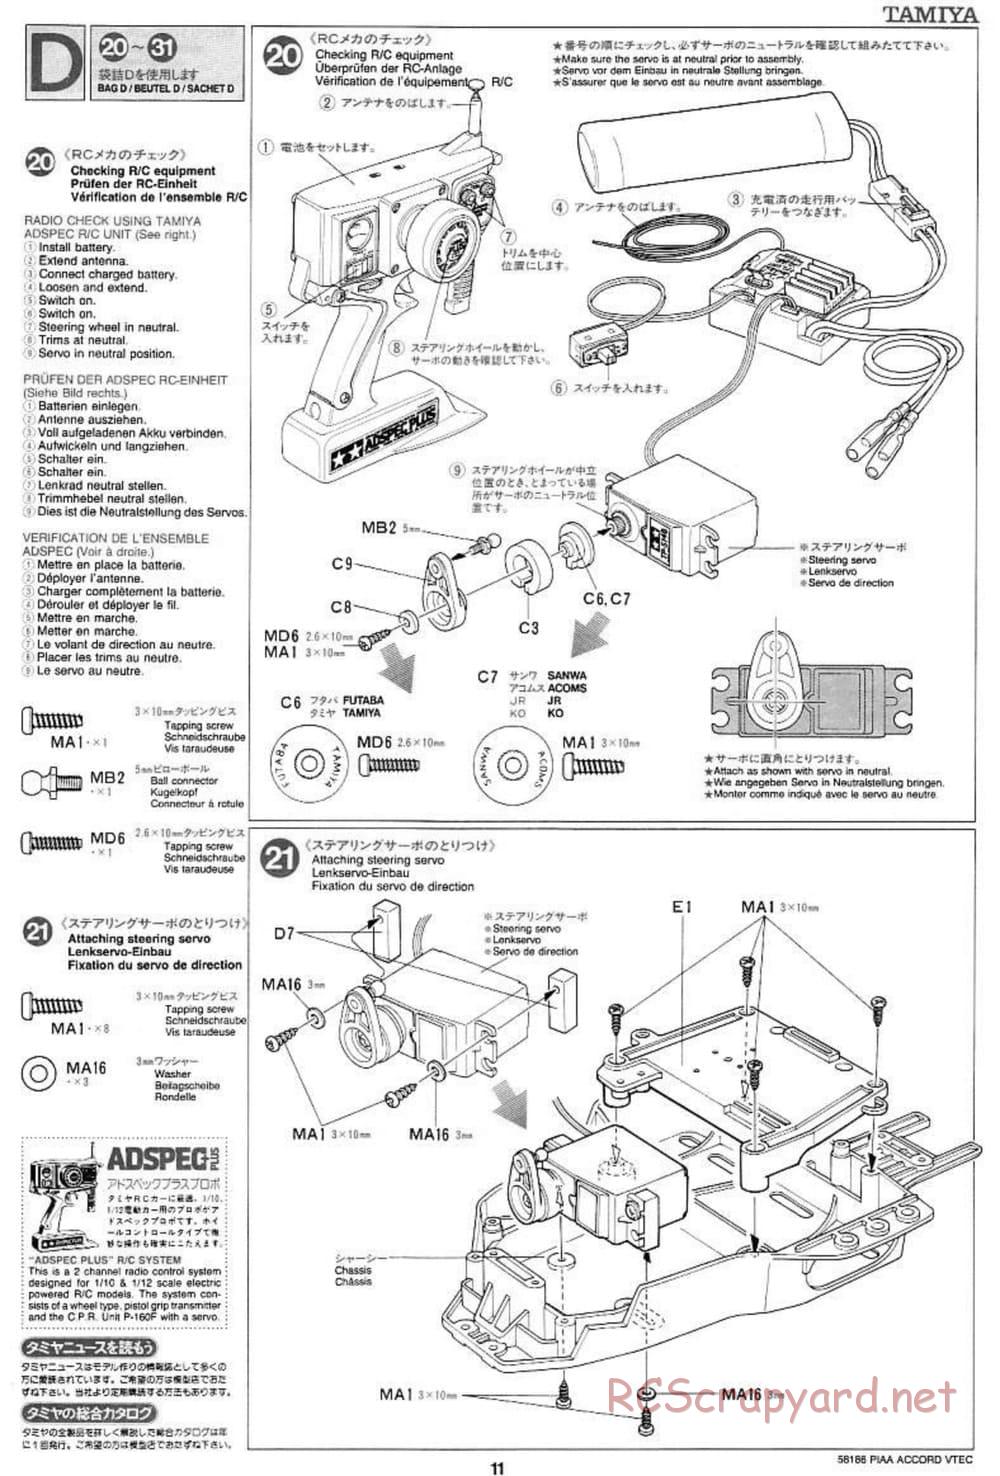 Tamiya - PIAA Accord VTEC - FF-01 Chassis - Manual - Page 11